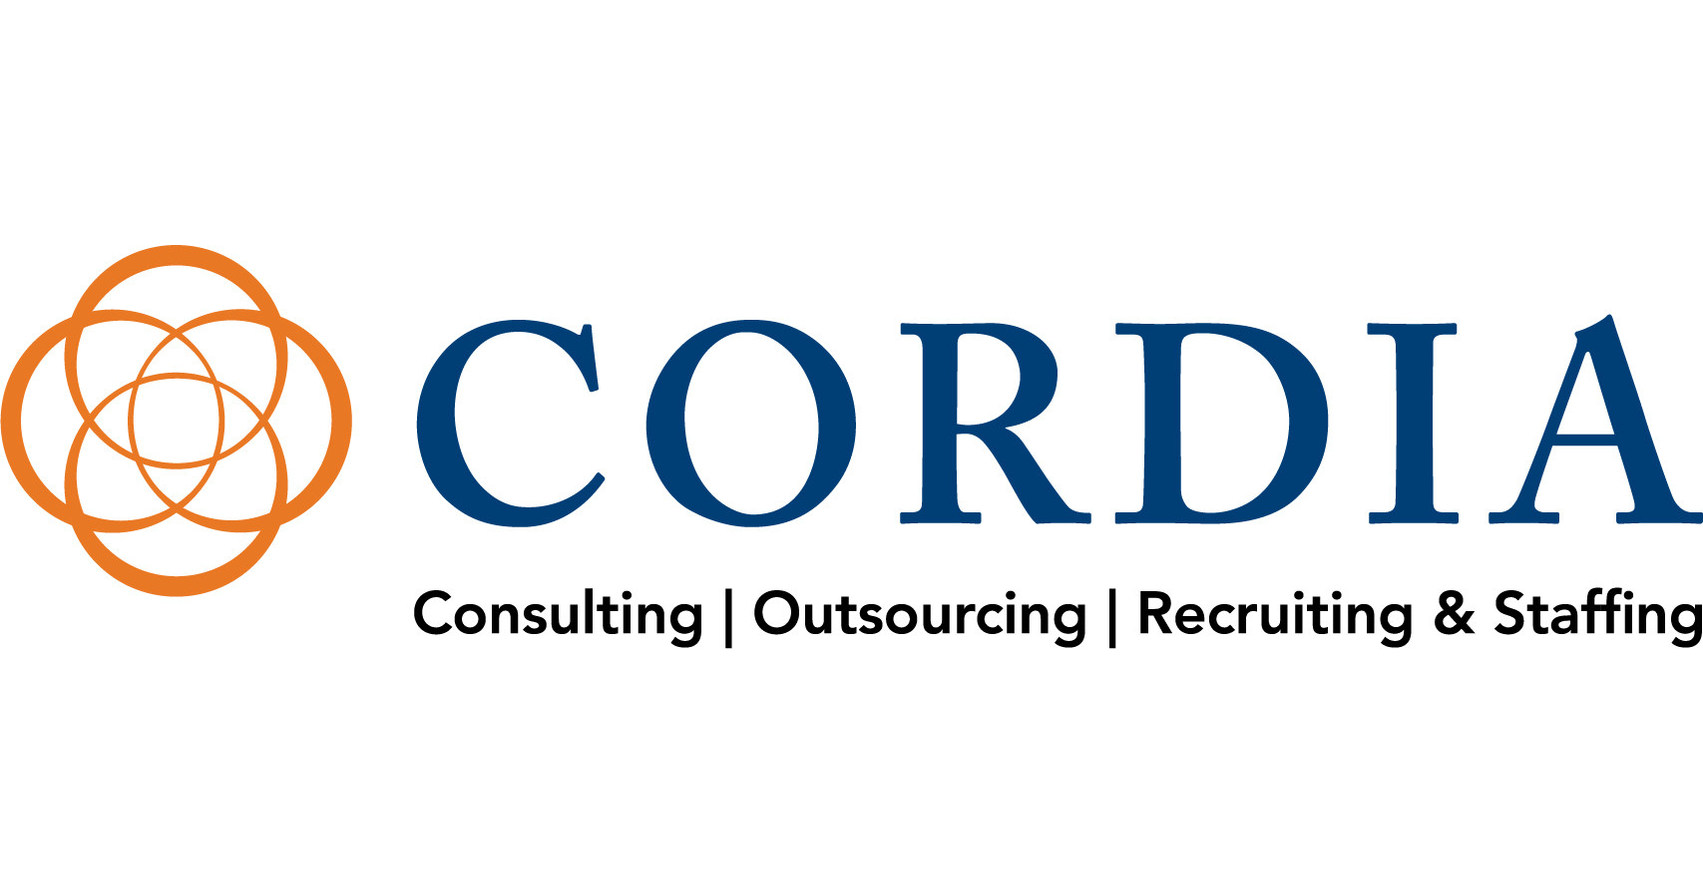 Cordia Partners